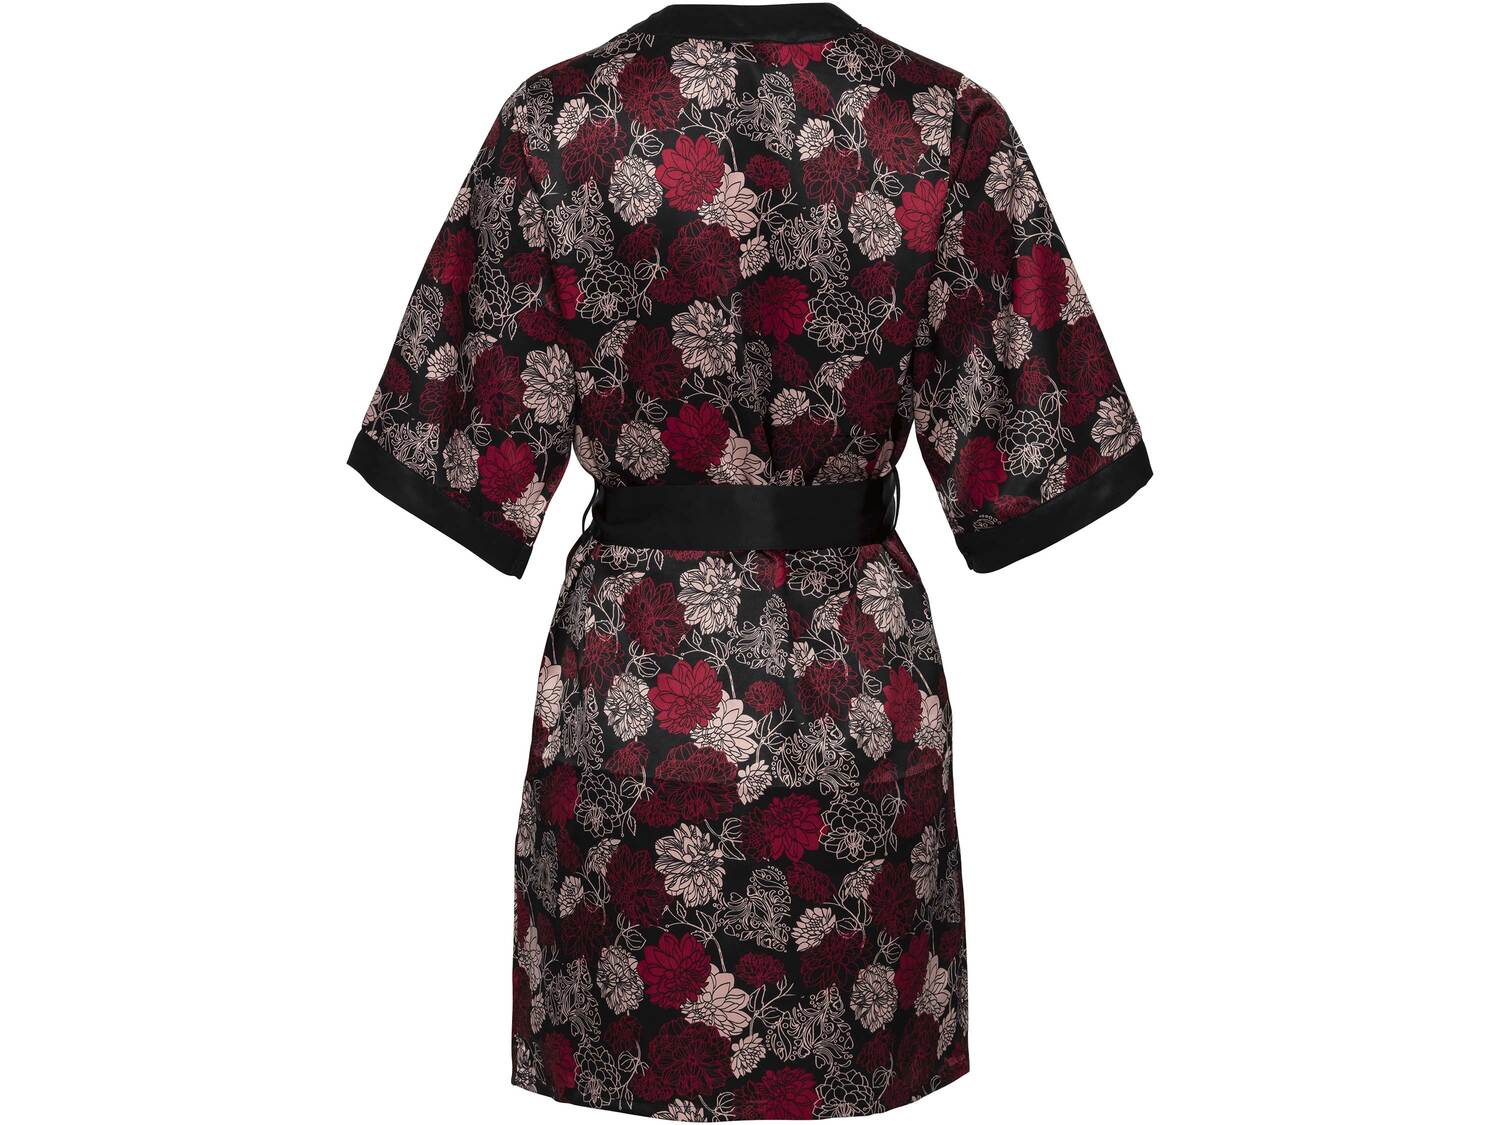 Kimono satynowe Esmara Lingerie, cena 34,99 PLN 
- rozmiary: XS-L
- wykończone ...